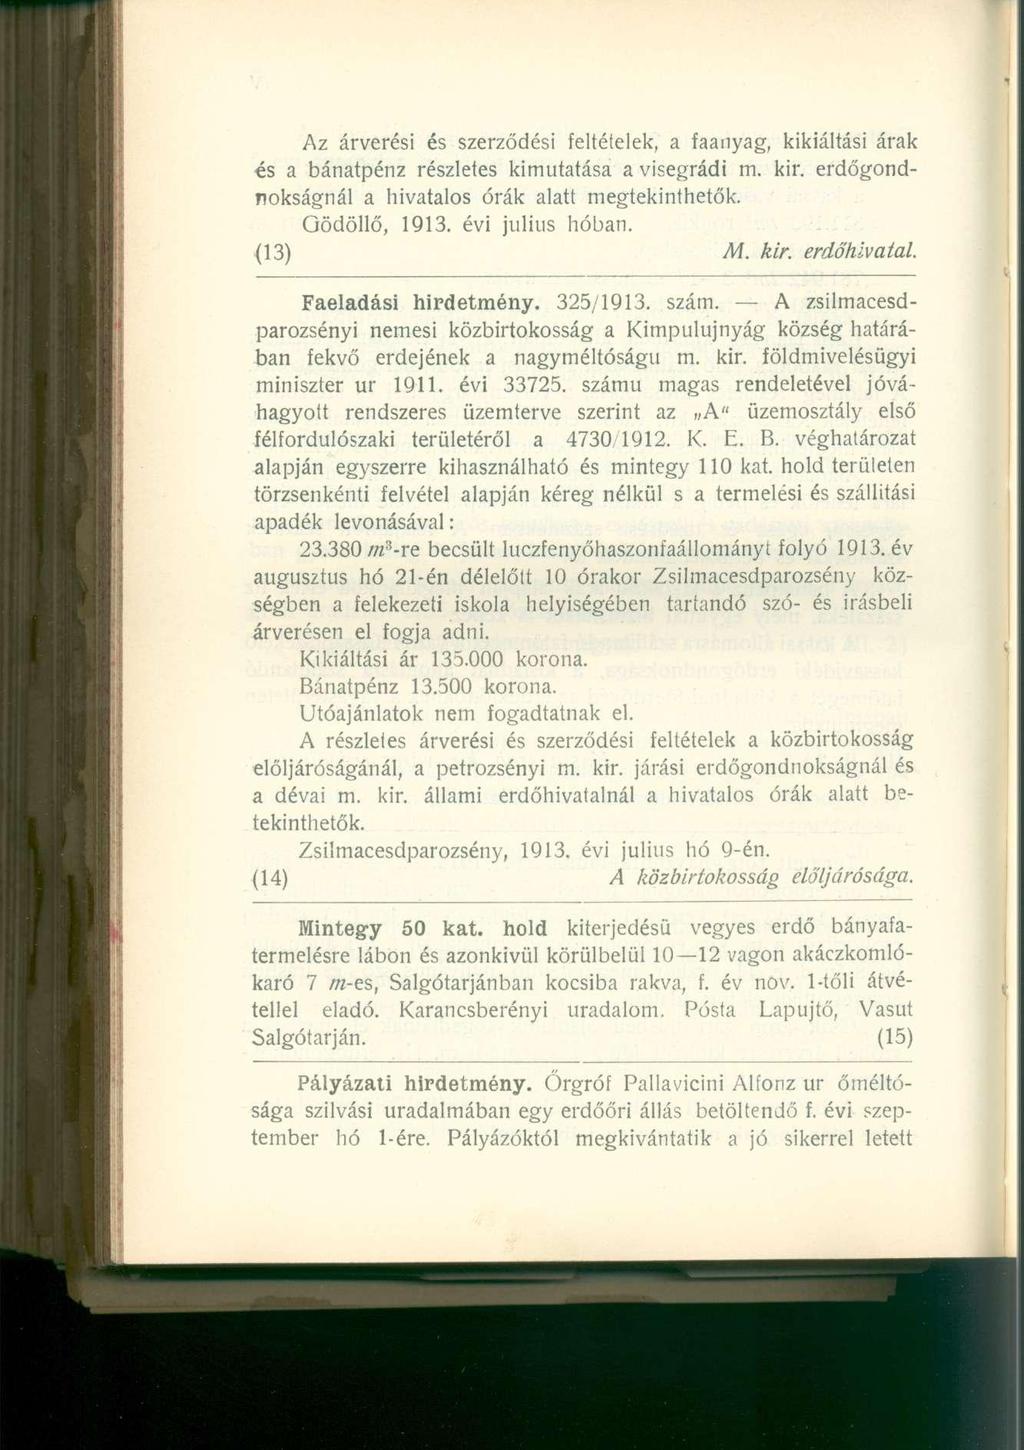 Az árverési és szerződési feltételek, a faanyag, kikiáltási árak és a bánatpénz részletes kimutatása a visegrádi m. kir. erdőgondnokságnál a hivatalos órák alatt megtekinthetők. Gödöllő, 1913.